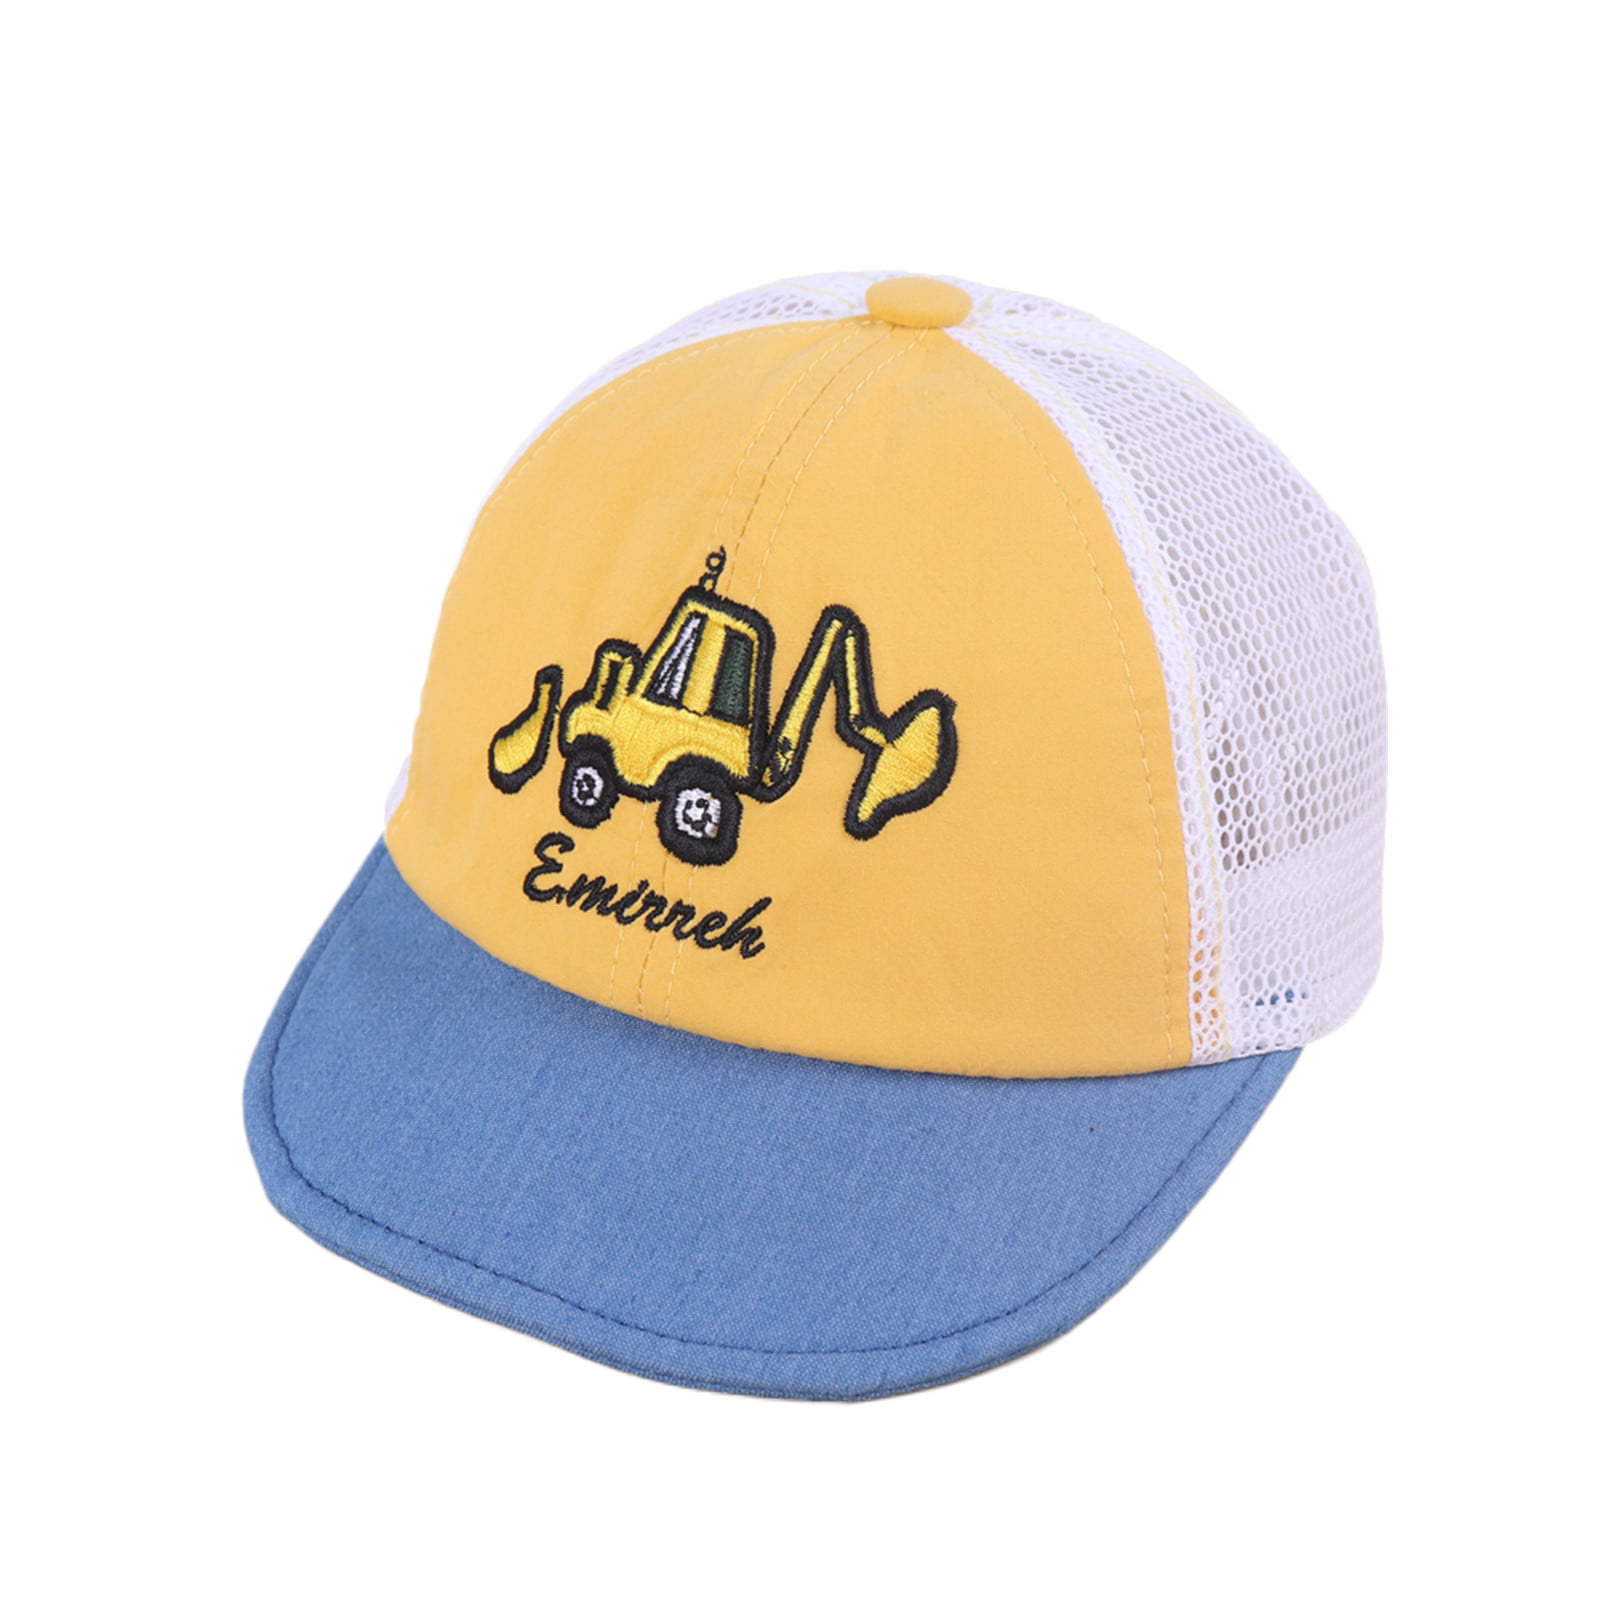 Evolution Excavator Child Baseball Caps Sun Caps Adsjutable Trucker Hats for Boys Girls 